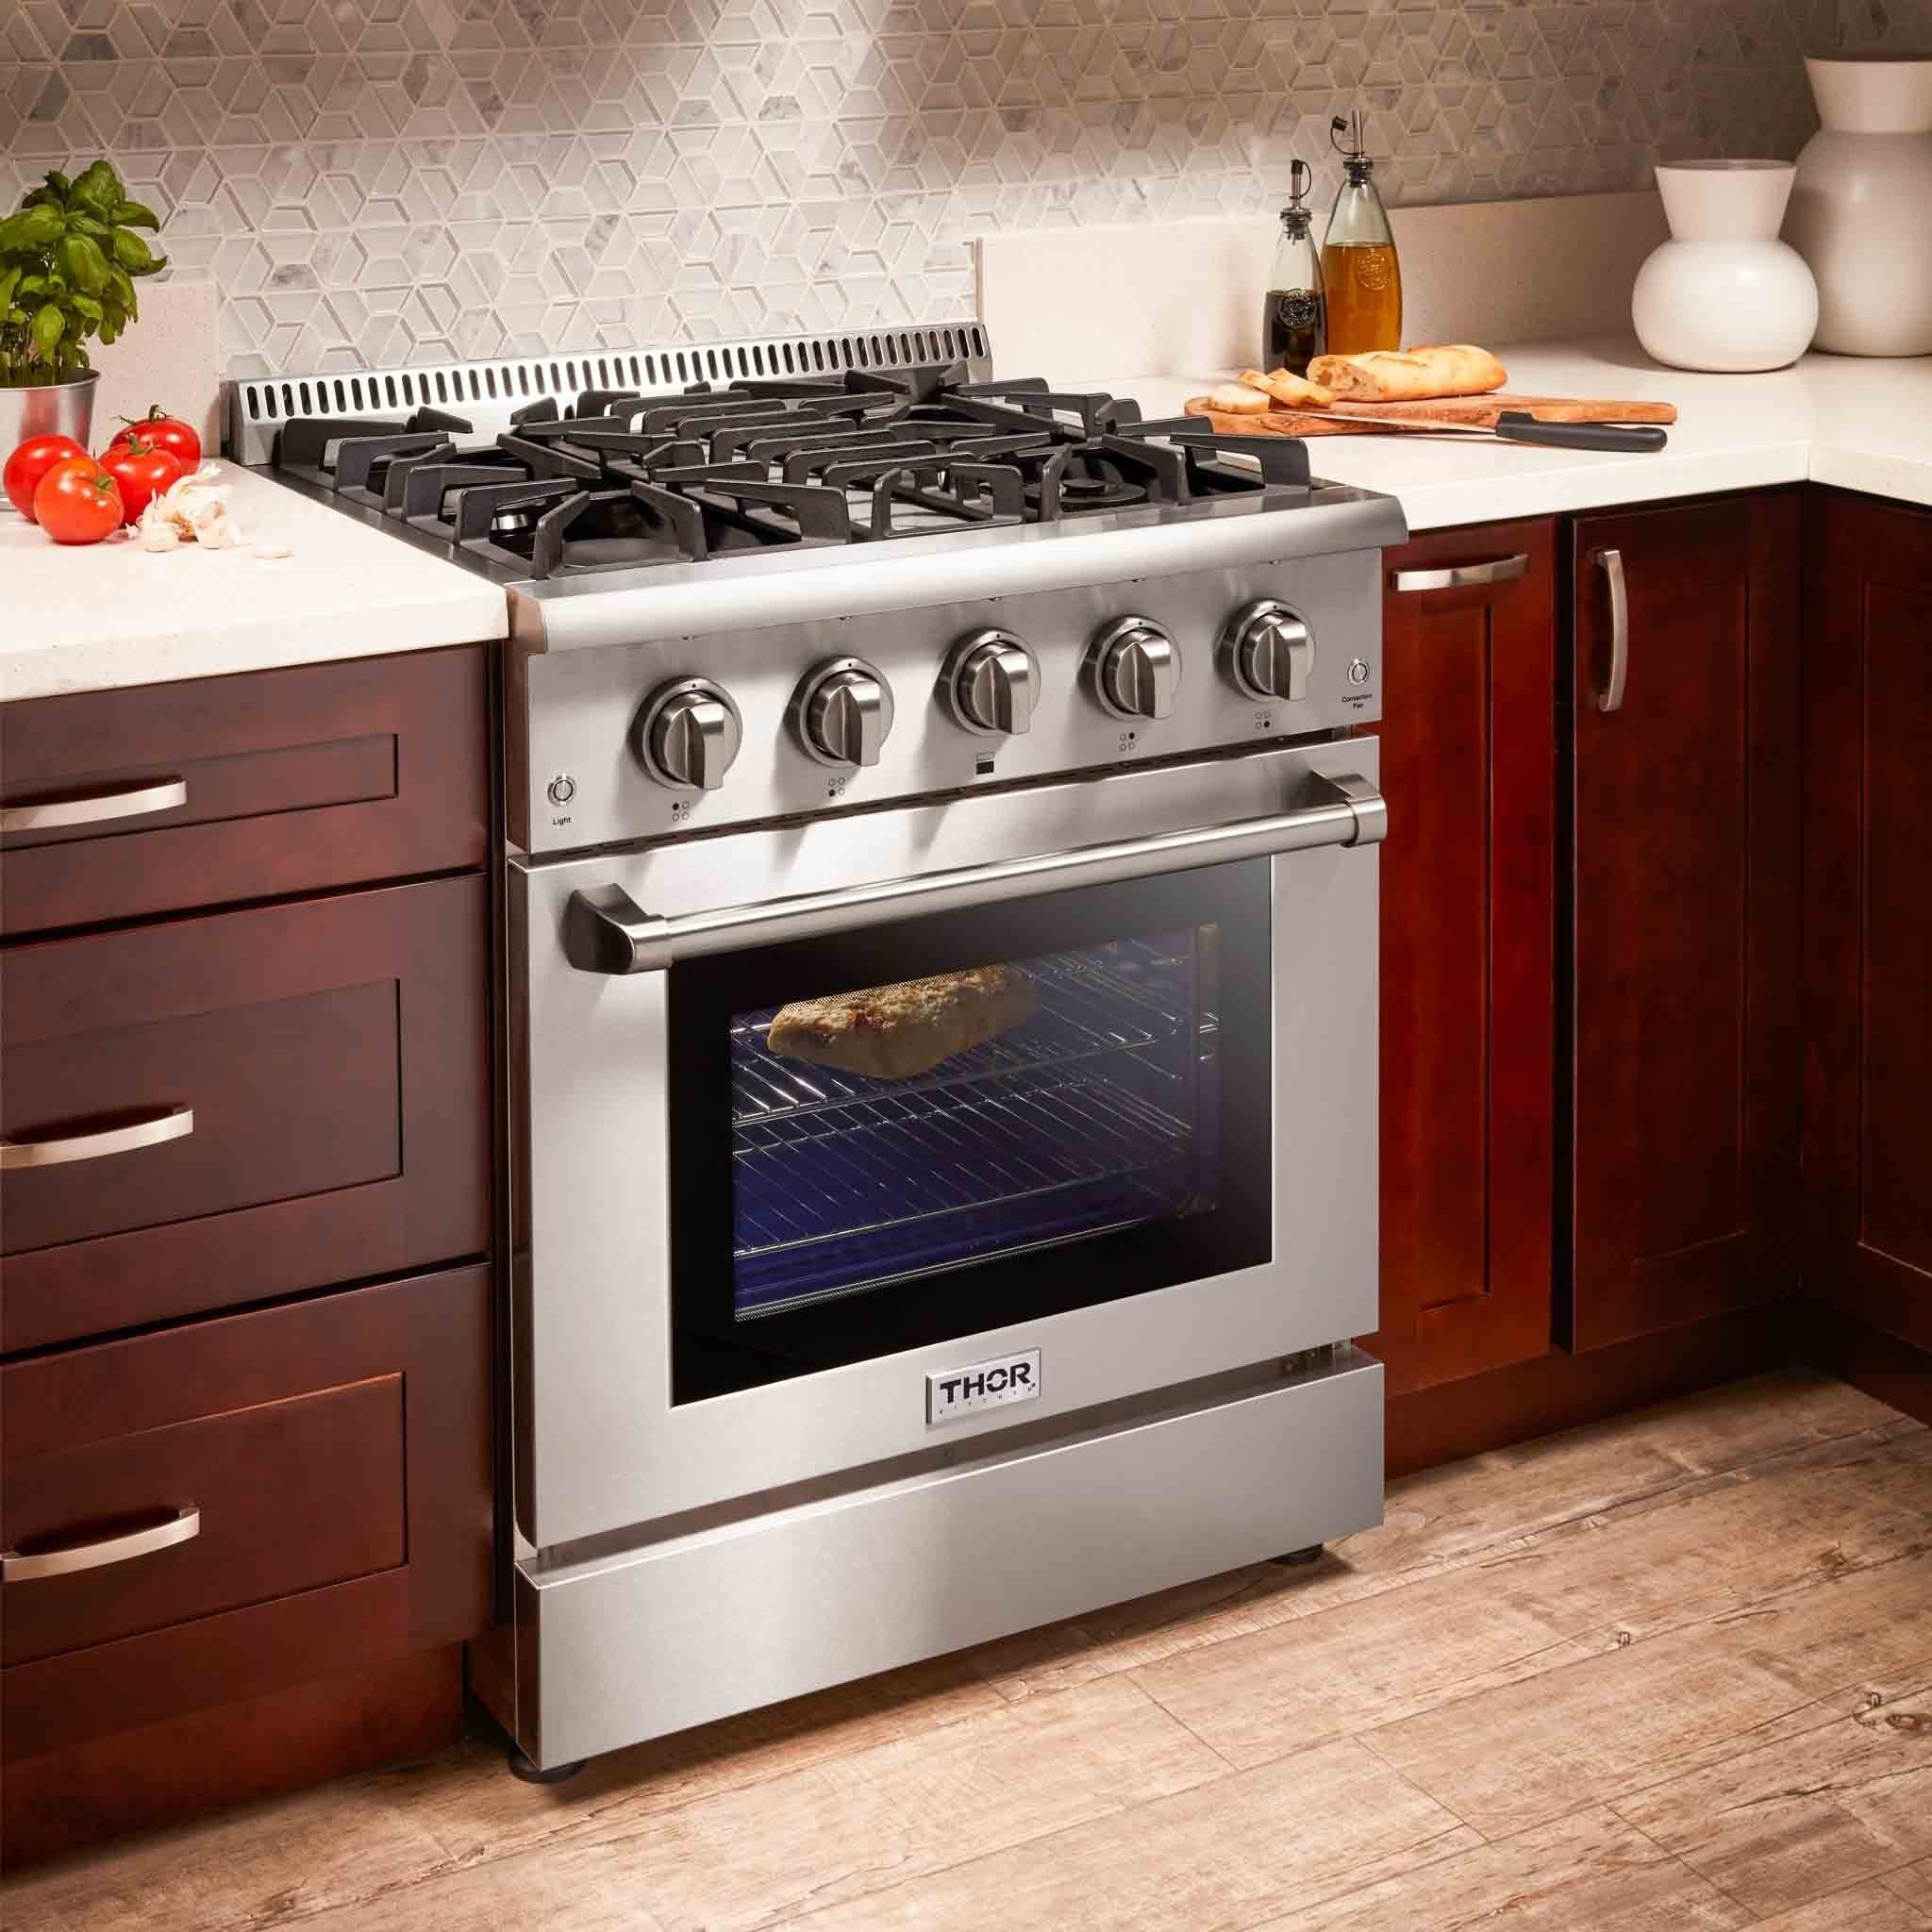 Thor Kitchen 2-Piece Pro Appliance Package - 30-Inch Gas Range & Premium Under Cabinet Hood in Stainless Steel